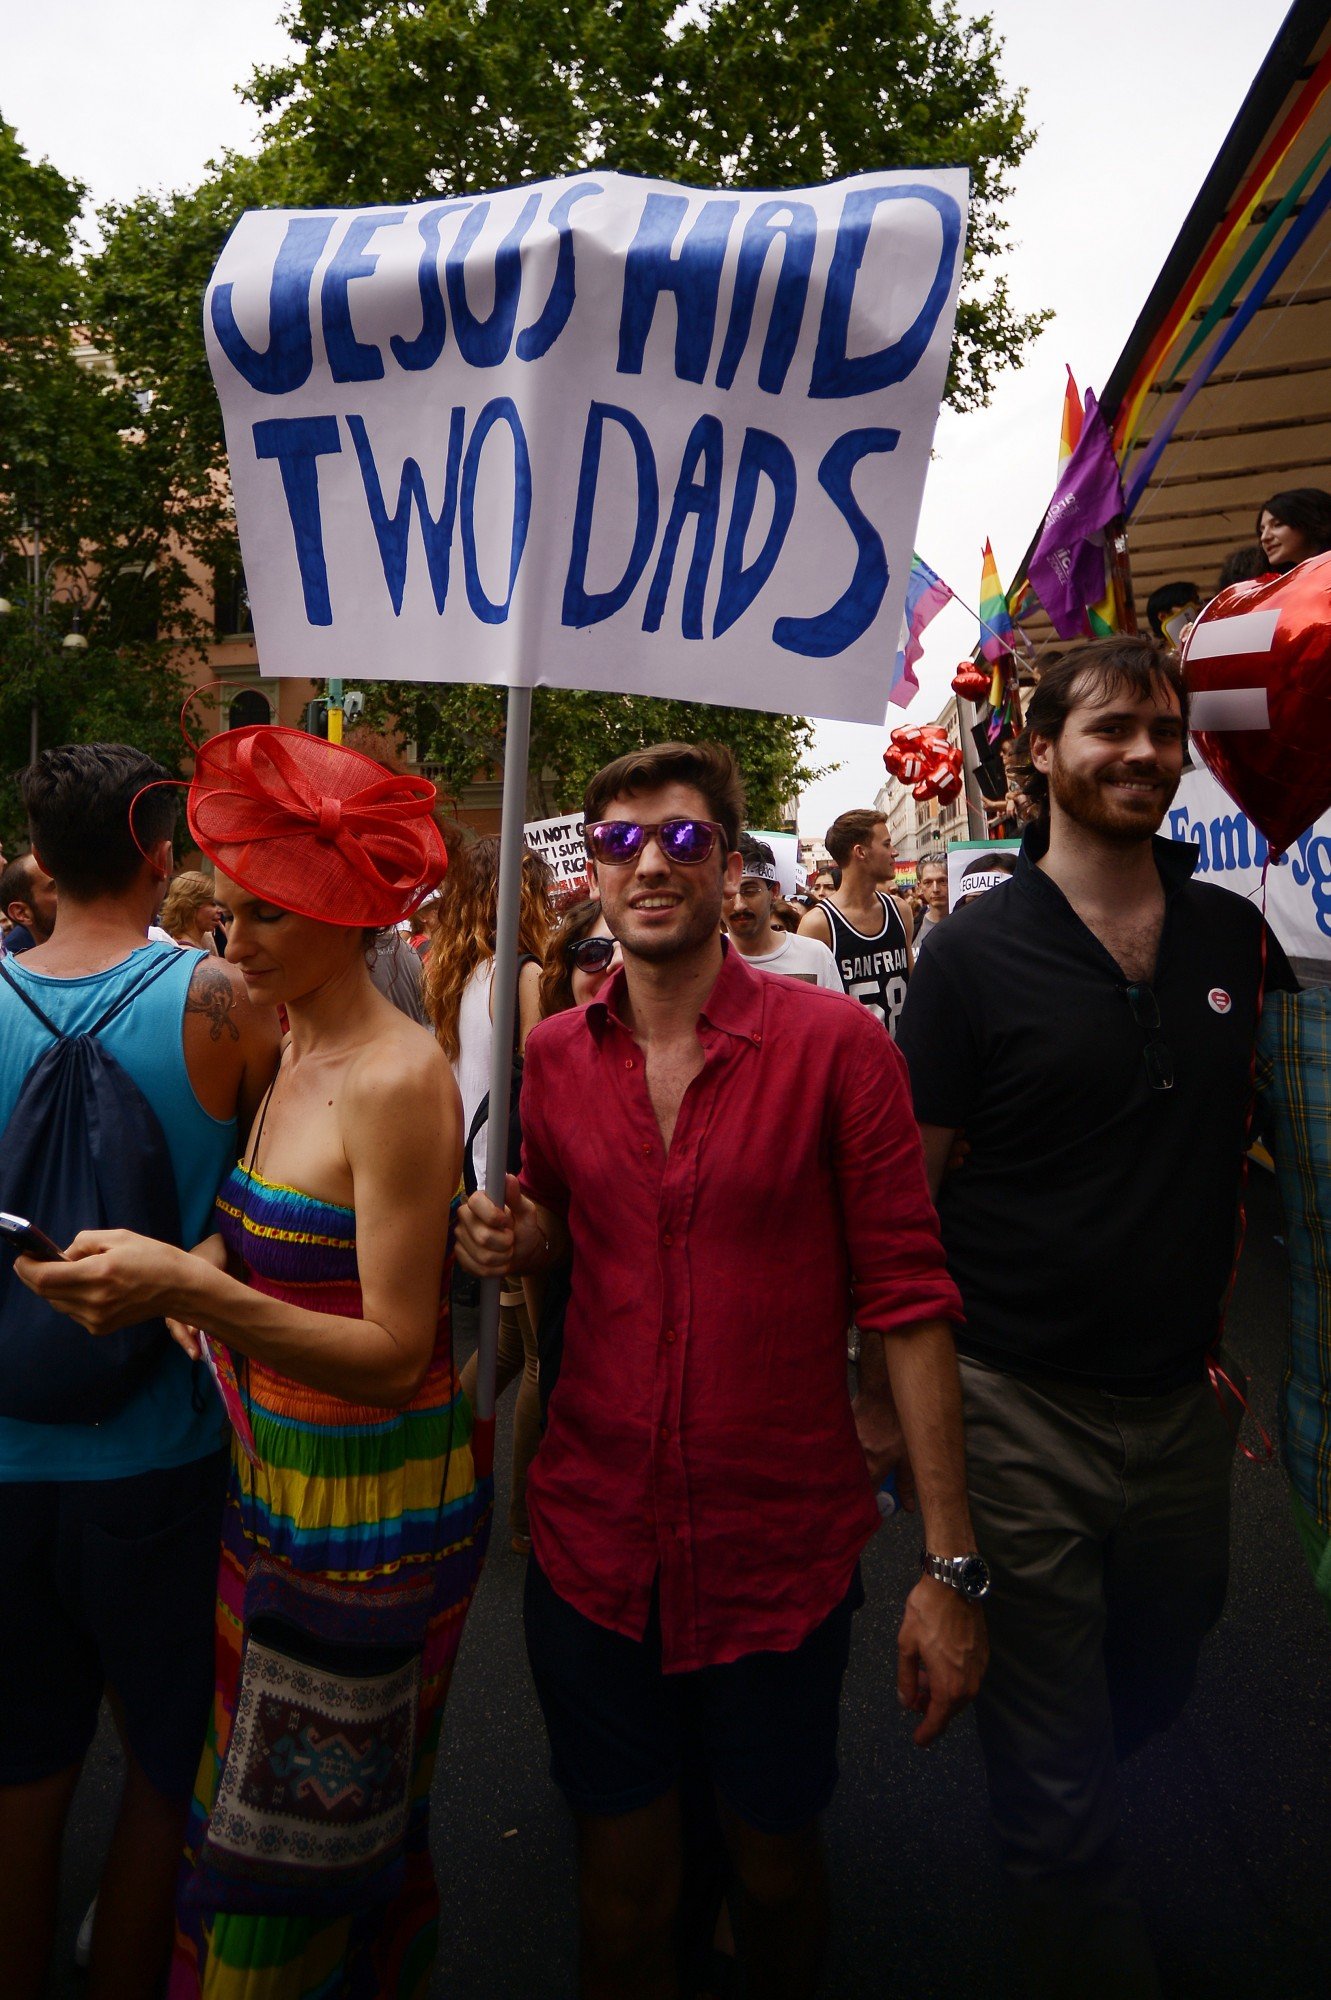 A frase "Jesus had two dads" (Jesus tinha dois pais), num cartaz, numa parada do Gay Pride, em Roma, 2015